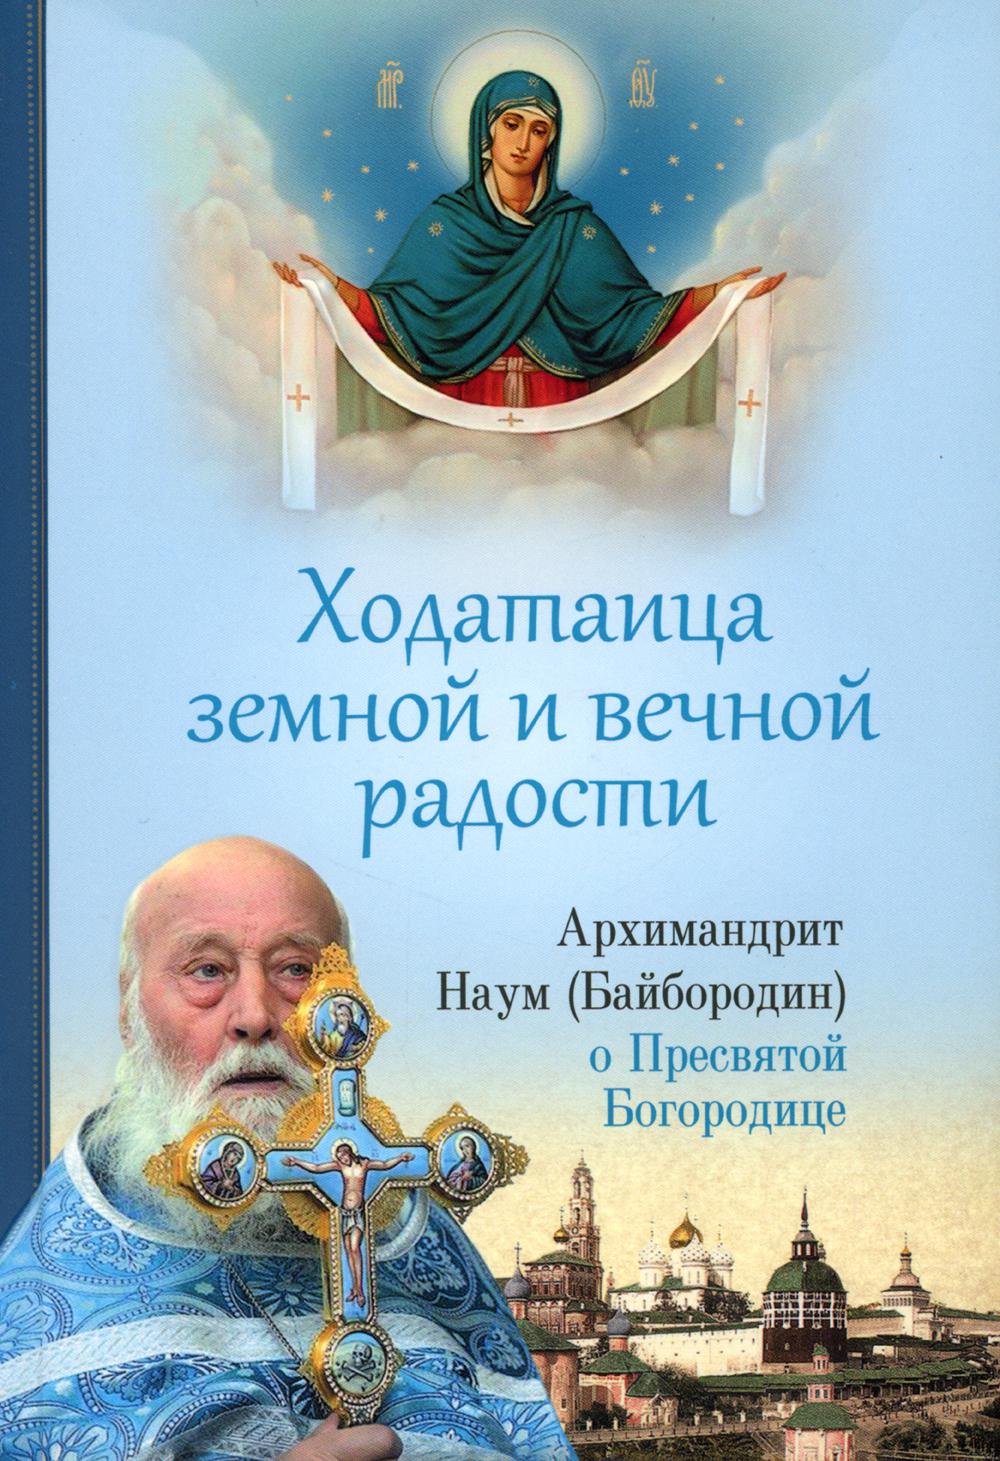 фото Книга ходатаица земной и вечной радости: о пресвятой богородице сибирская благозвонница